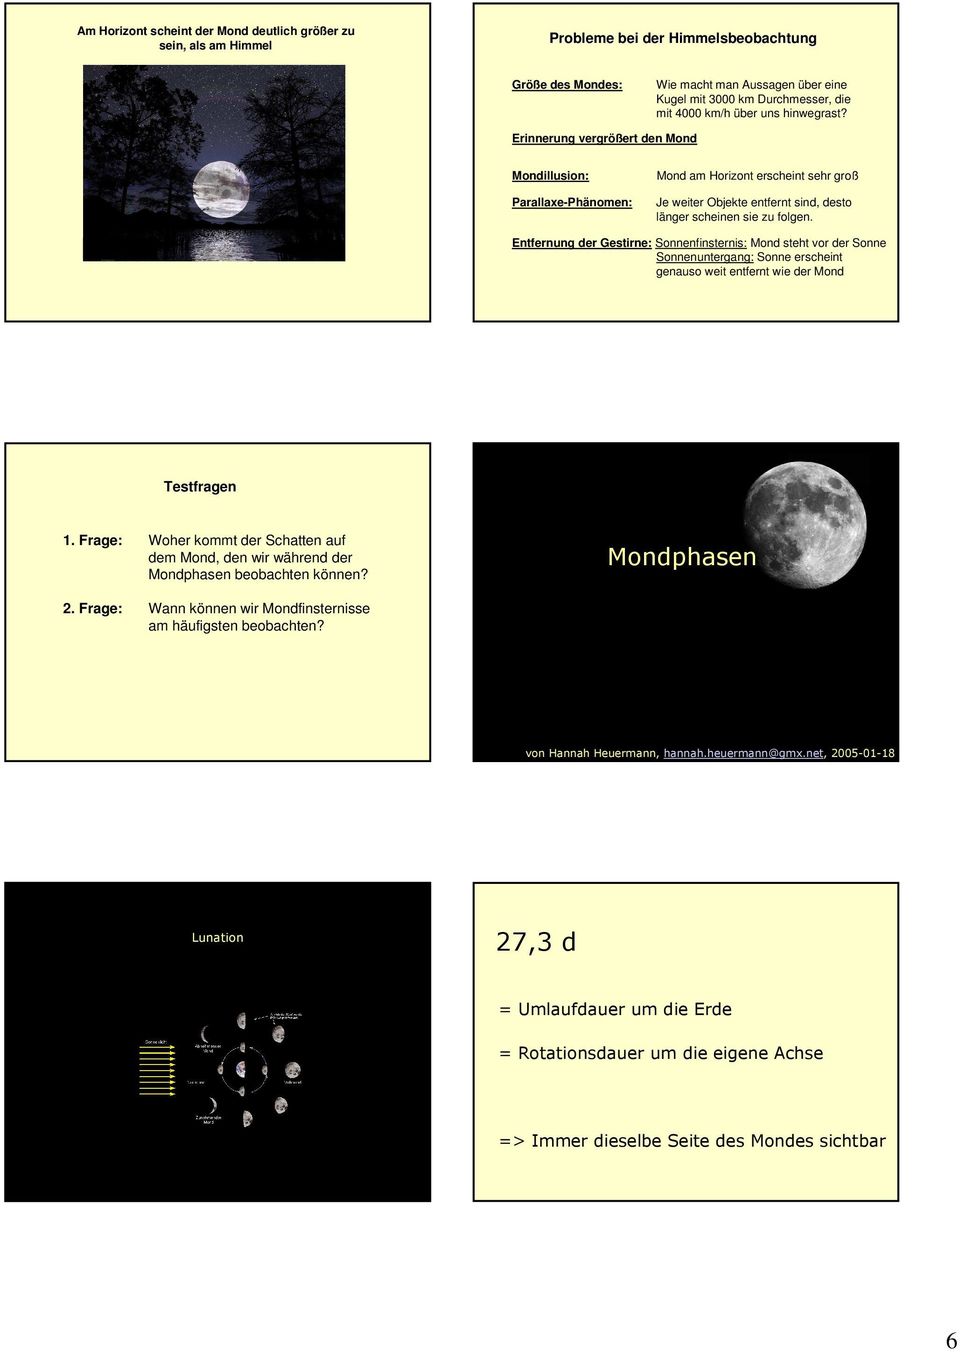 Erinnerung vergrößert den Mond Mondillusion: Parallaxe-Phänomen: Mond am Horizont erscheint sehr groß Je weiter Objekte entfernt sind, desto länger scheinen sie zu folgen.